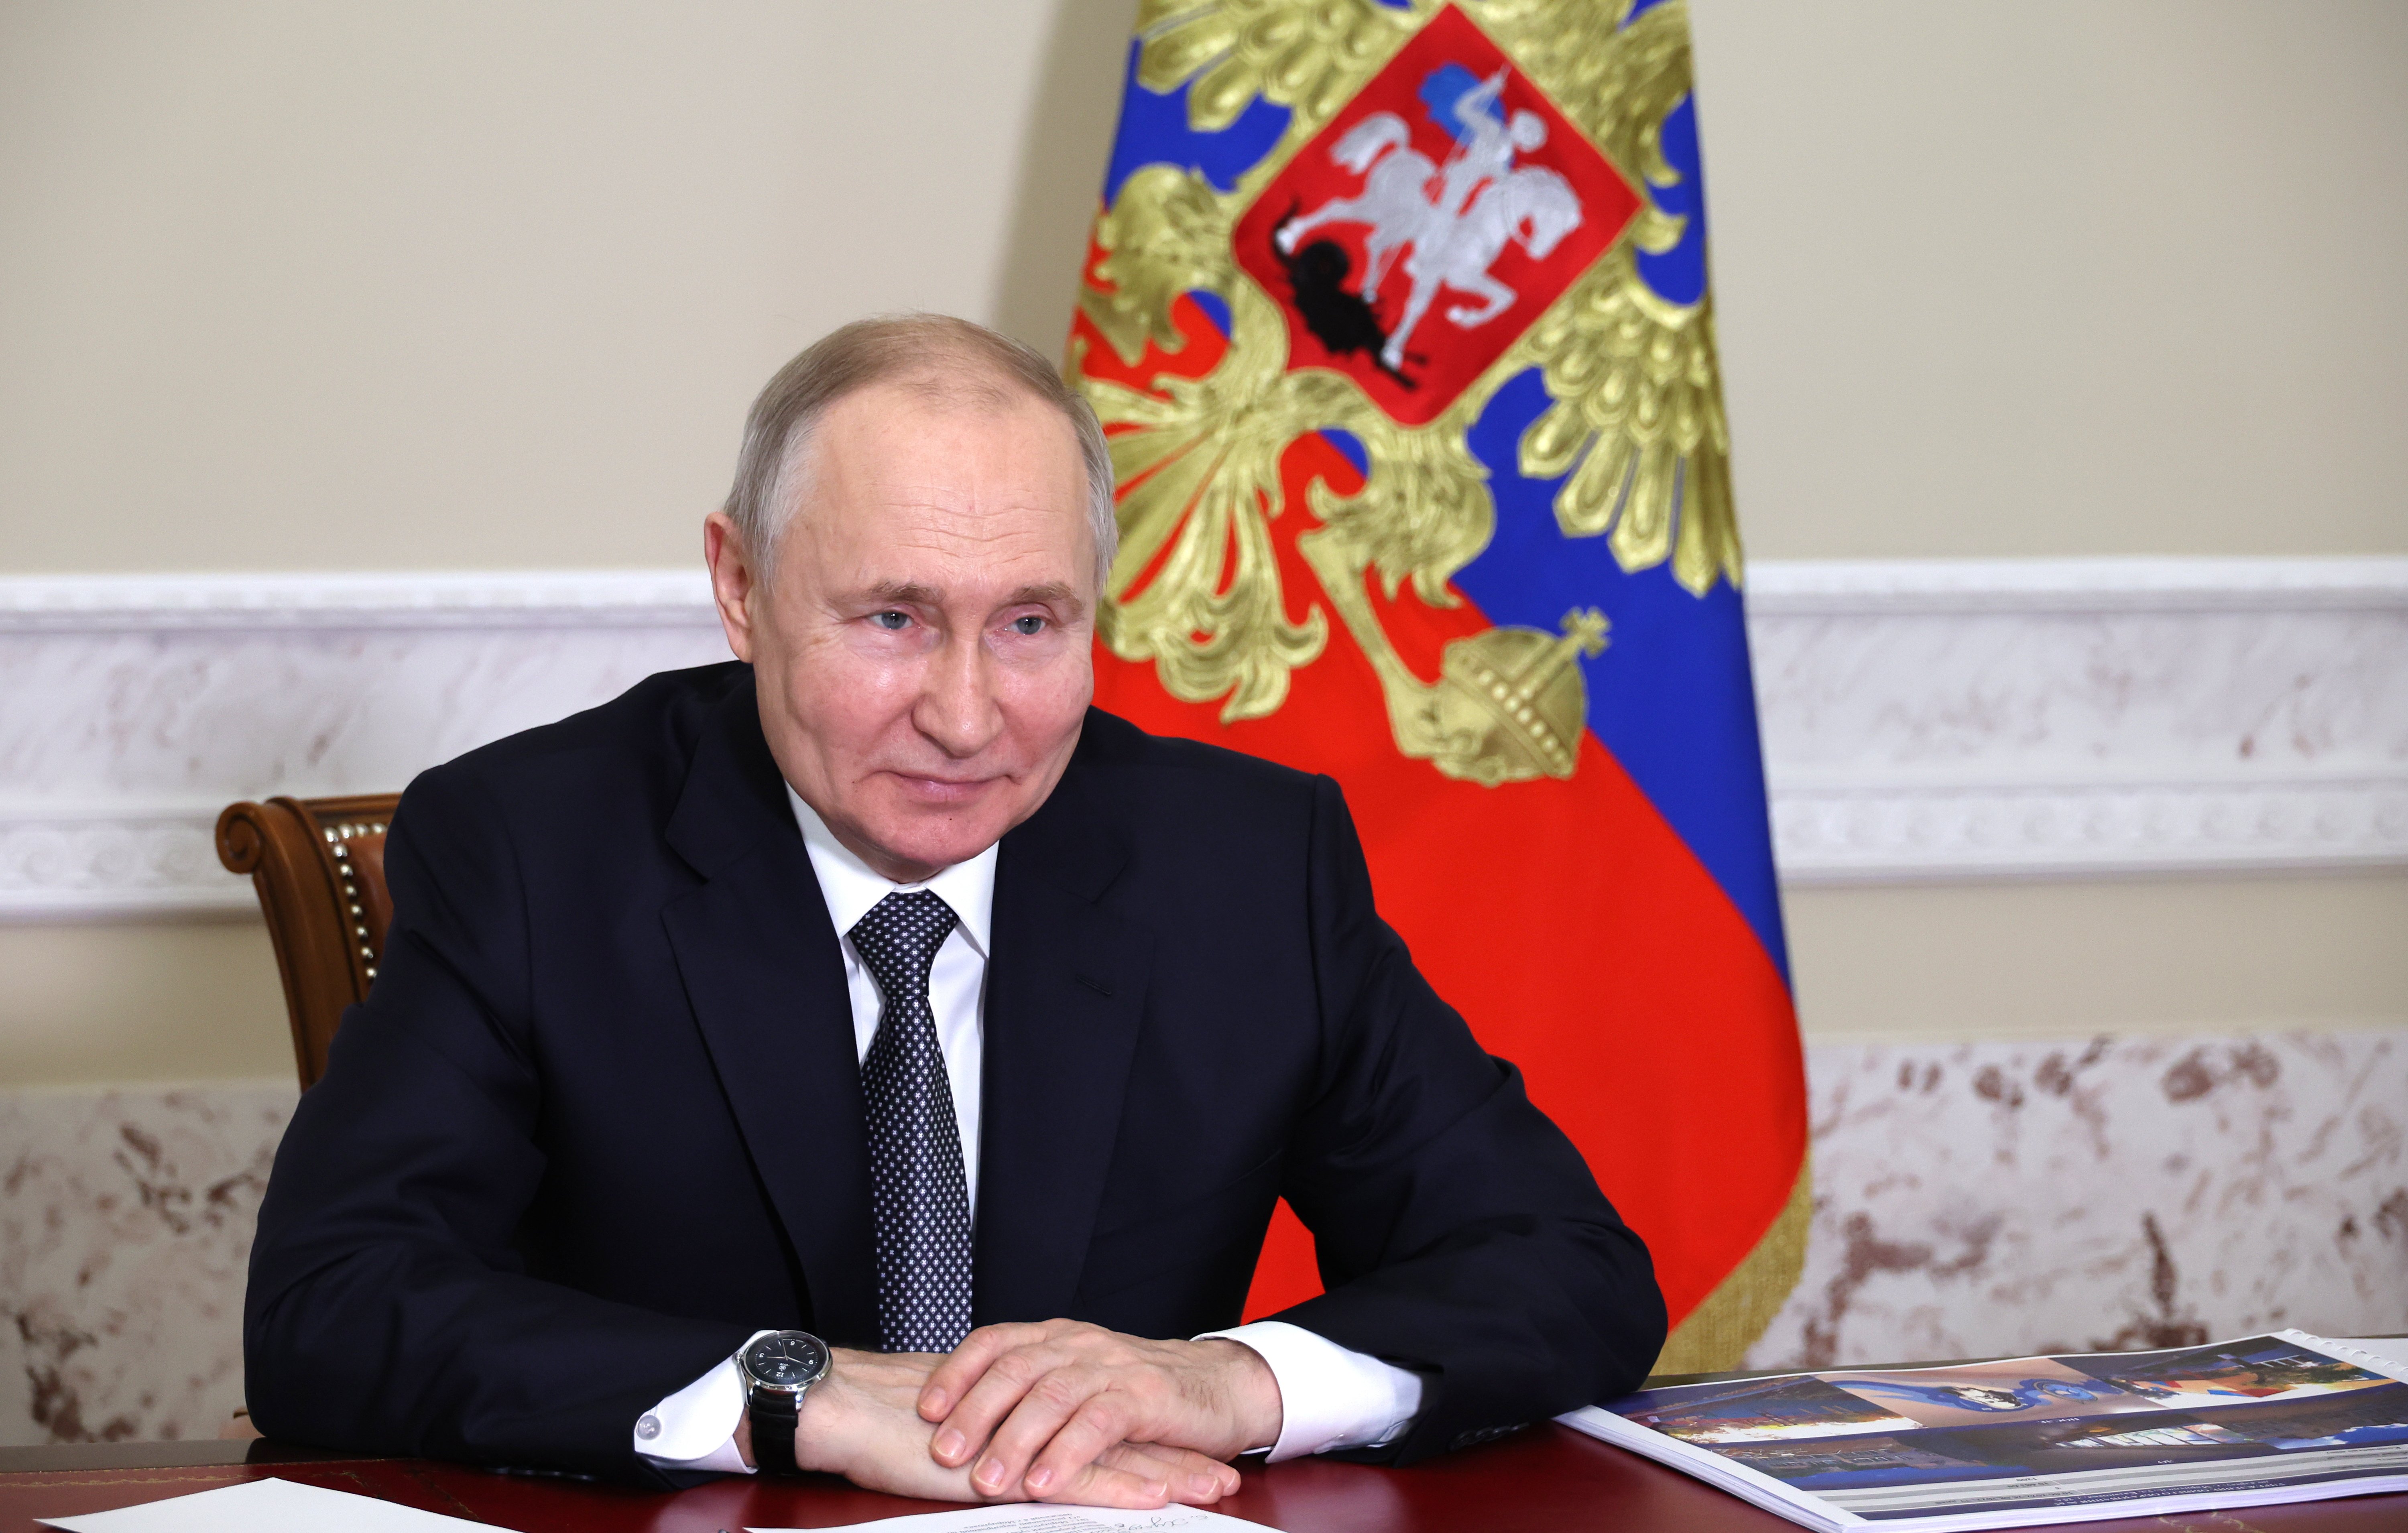 Nou desgavell a Rússia: un excés de seguretat provoca caos circulatori